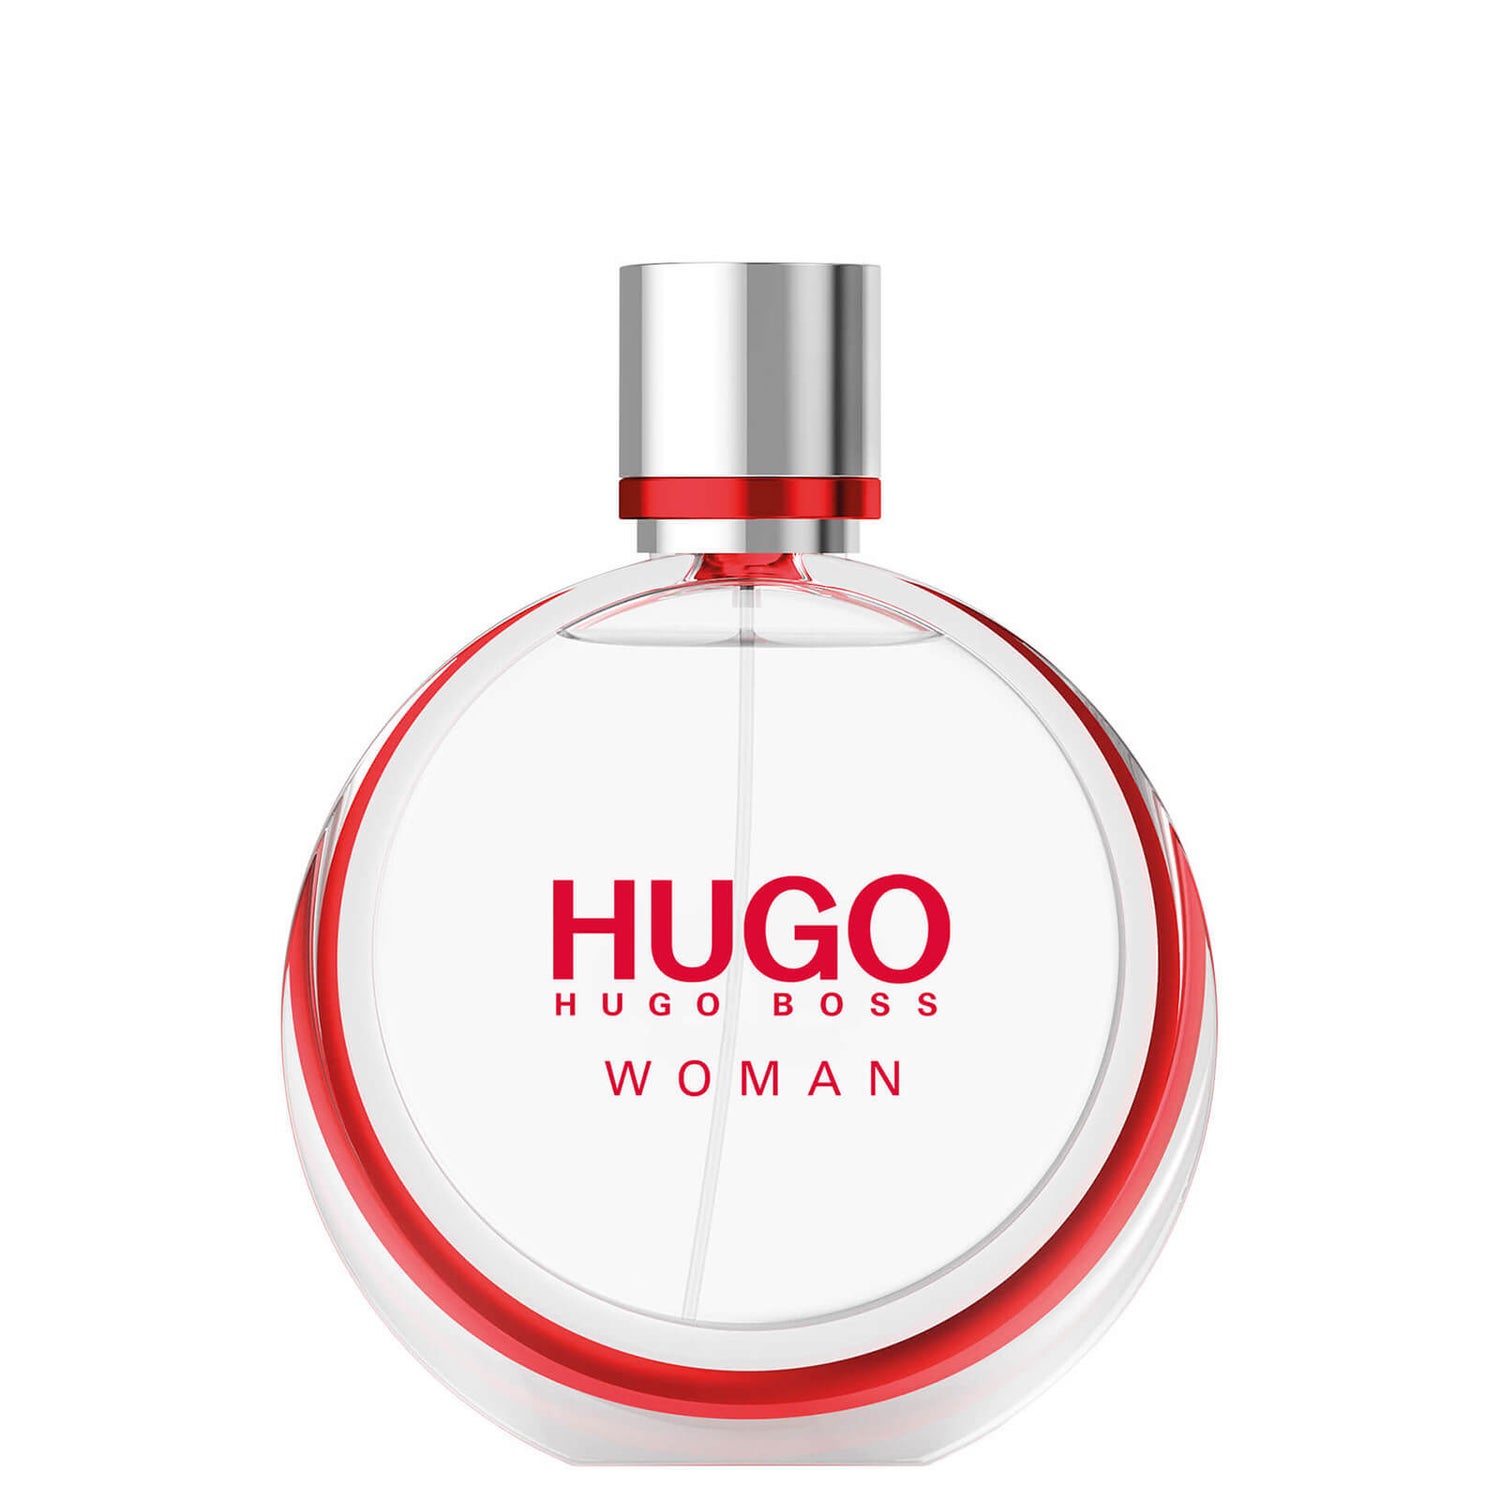 Eau de Parfum Spray HUGO Woman da Hugo Boss 50 ml